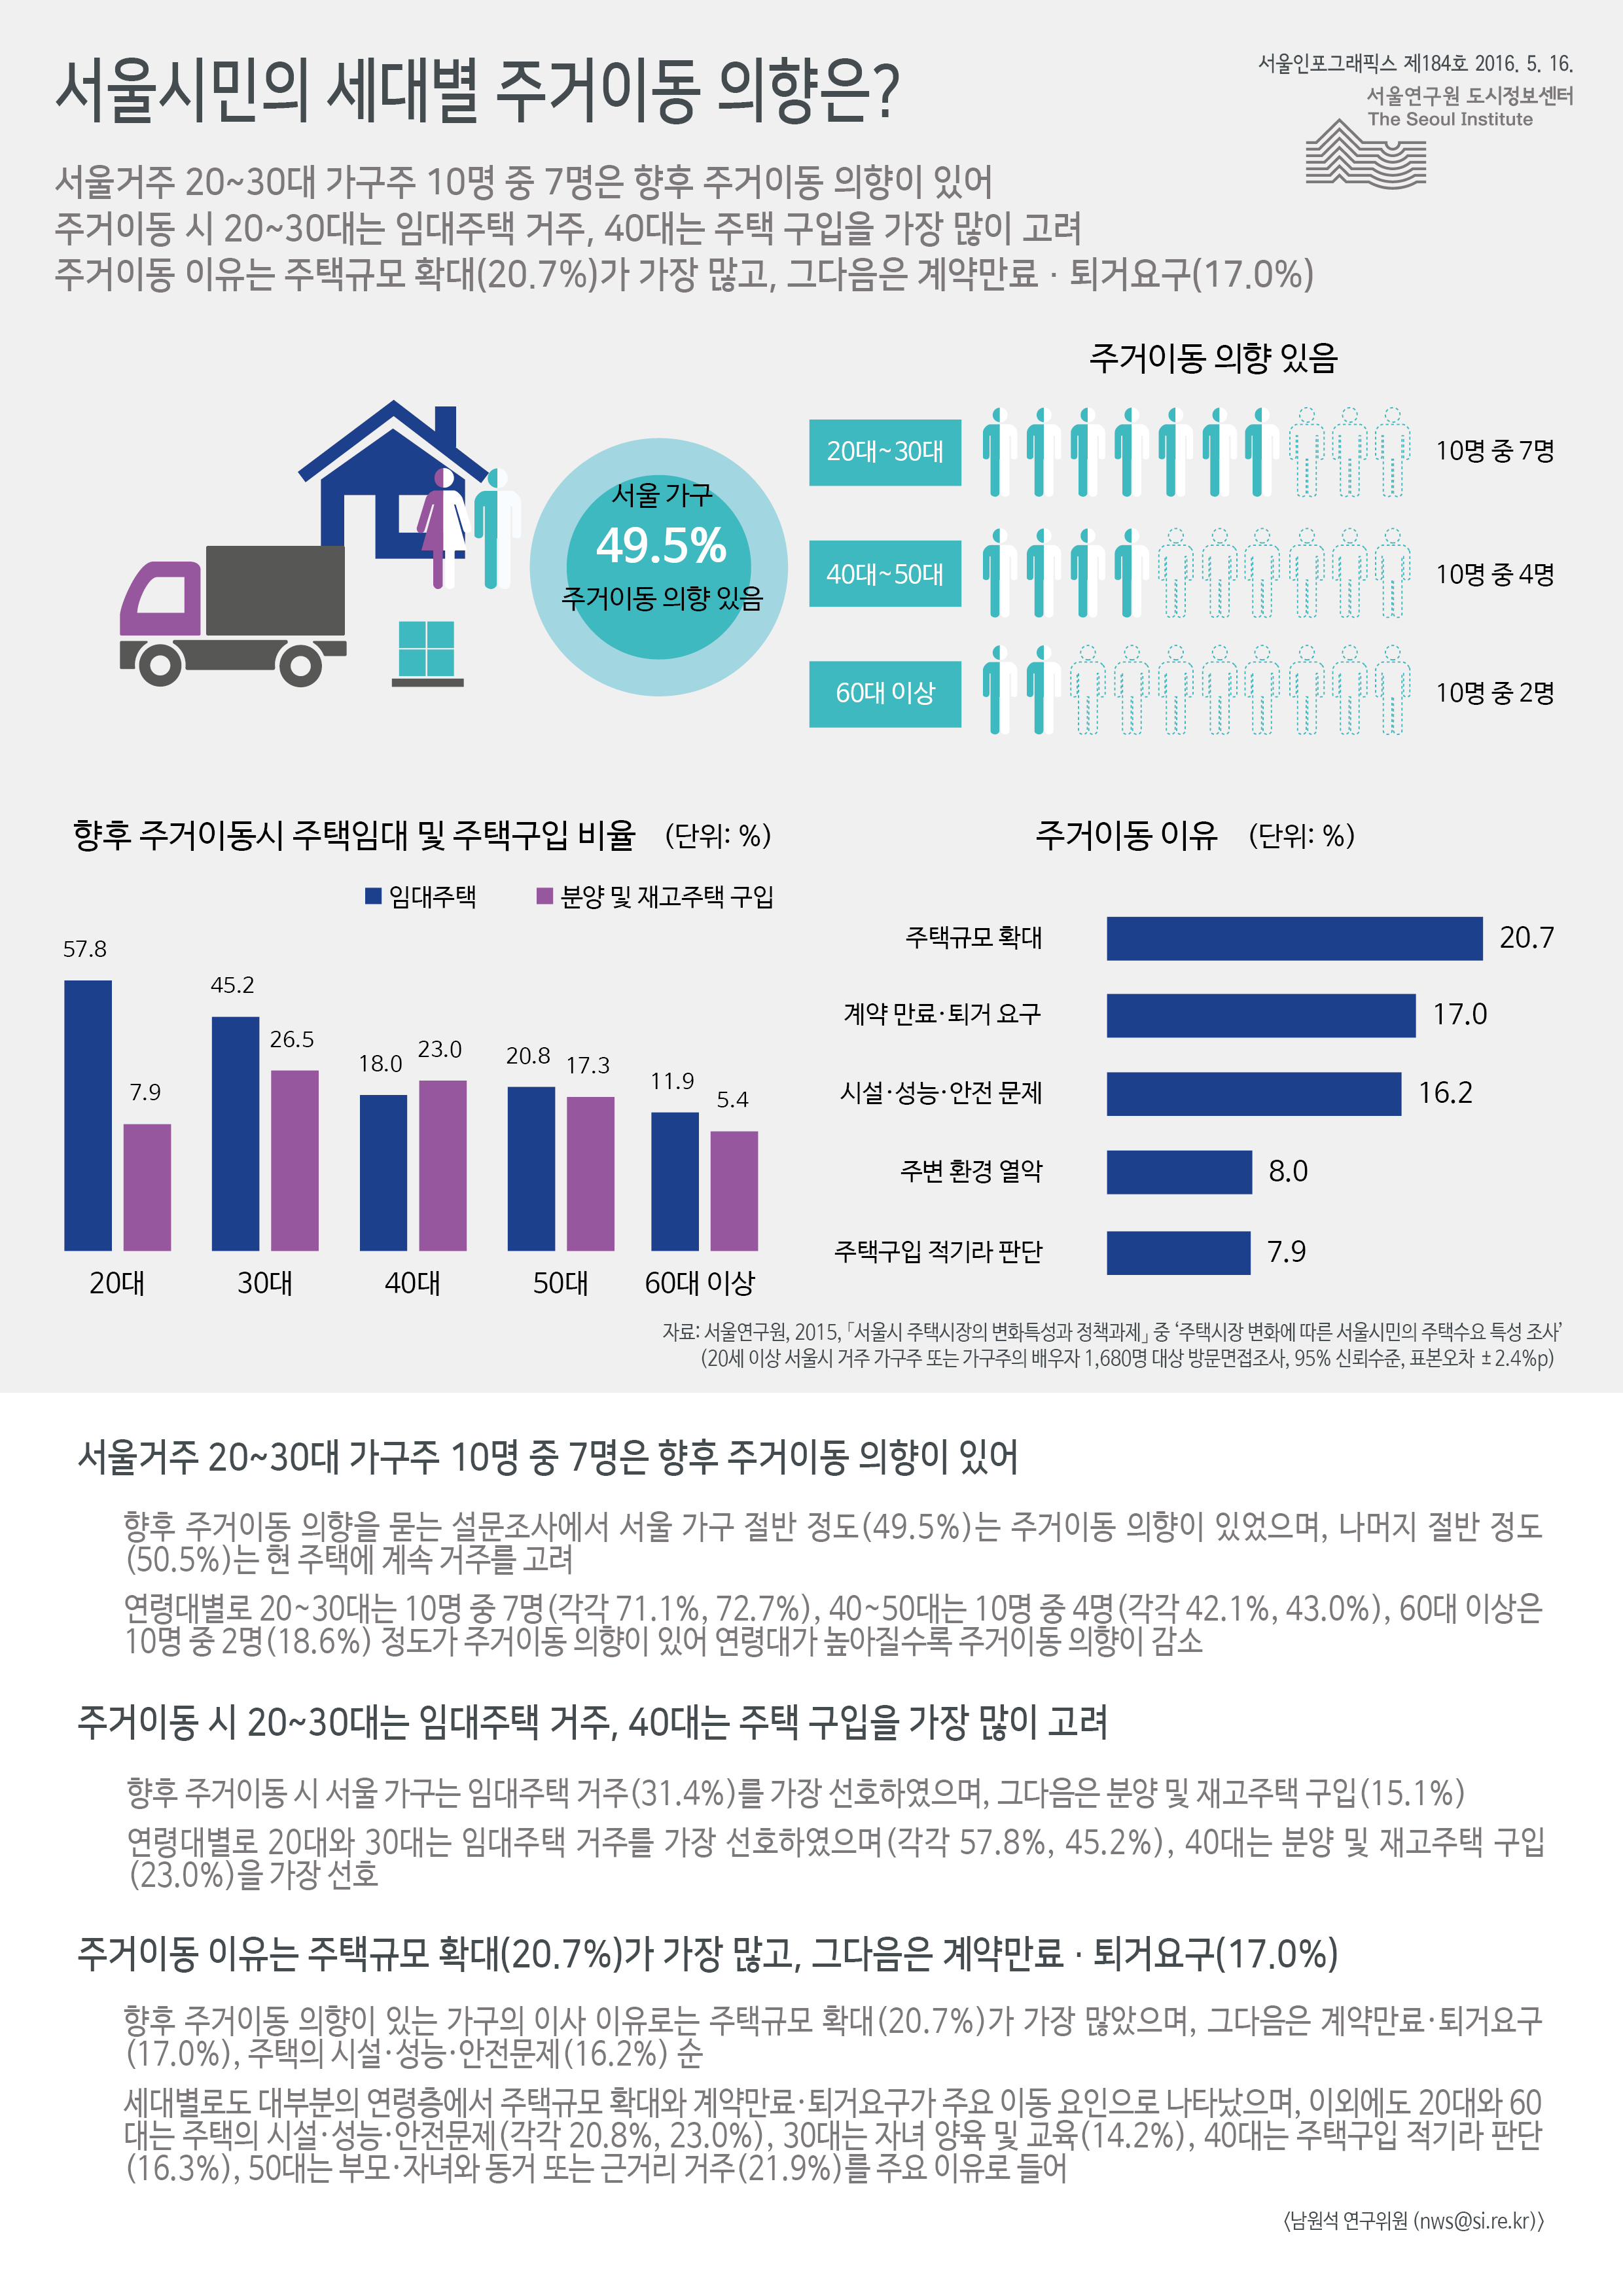 서울시민의 세대별 주거이동 의향은? 서울인포그래픽스 제184호 2016년 5월 16일 서울거주 20~30대 가구주 10명 중 7명은 향후 주거이동 의향이 있음. 주거이동 시 20~30대는 임대주택 거주, 40대는 주택 구입을 가장 많이 고려. 주거이동 이유는 주택규모 확대가 20.7%로 가장 많고, 그다음은 계약만료･퇴거요구가 17.0%를 차지함으로 정리 될 수 있습니다. 인포그래픽으로 제공되는 그래픽은 하단에 표로 자세히 제공됩니다.